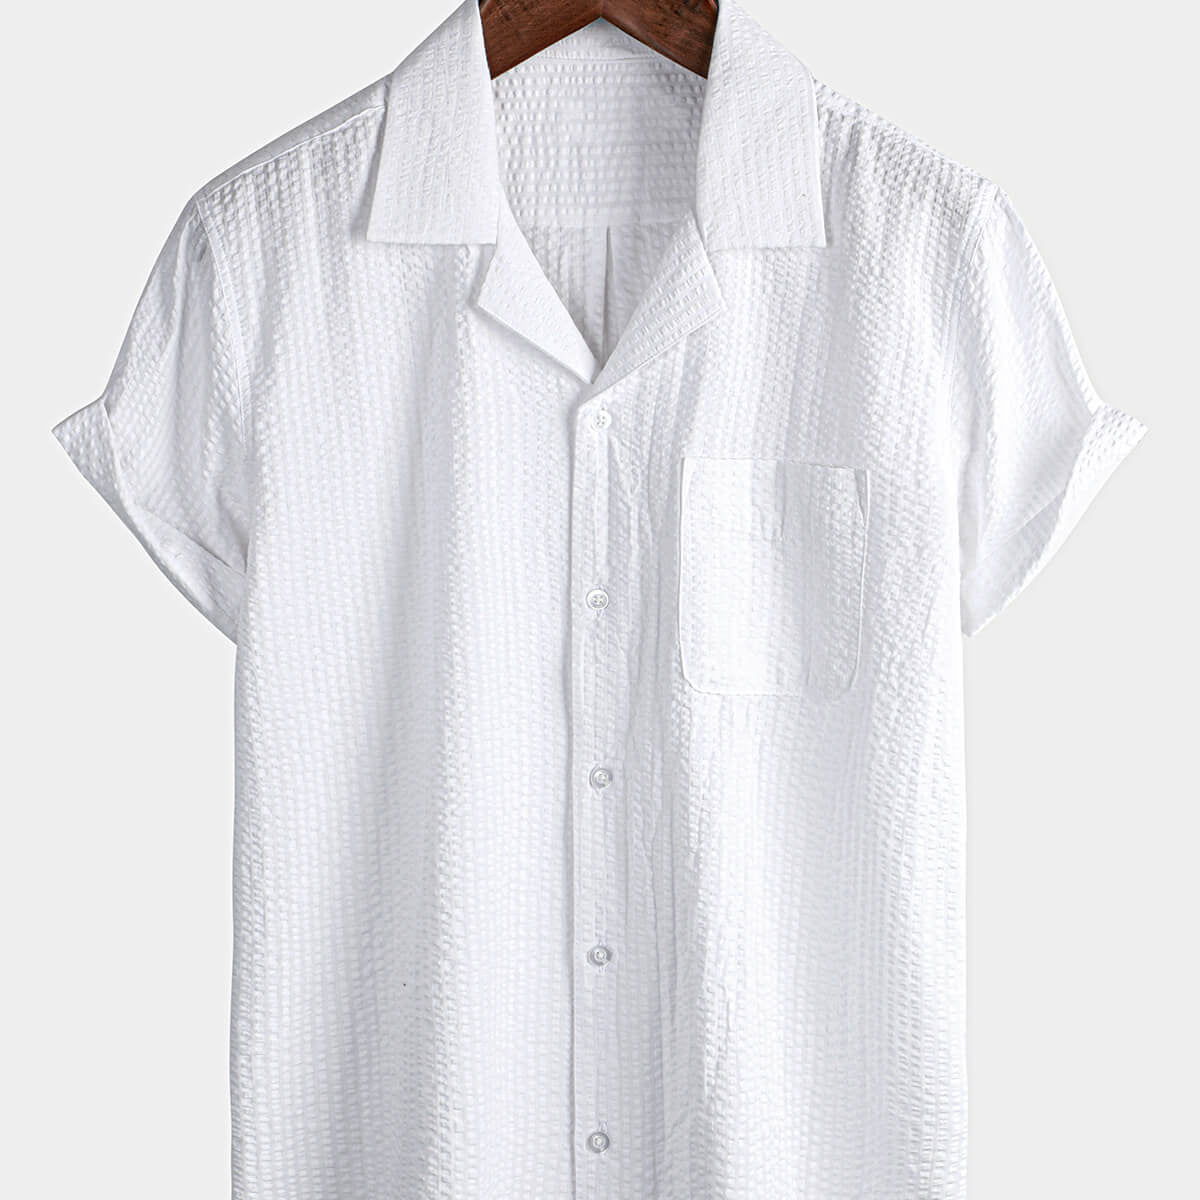 Camisa de manga corta con bolsillo de verano 100% algodón informal con botones para hombre